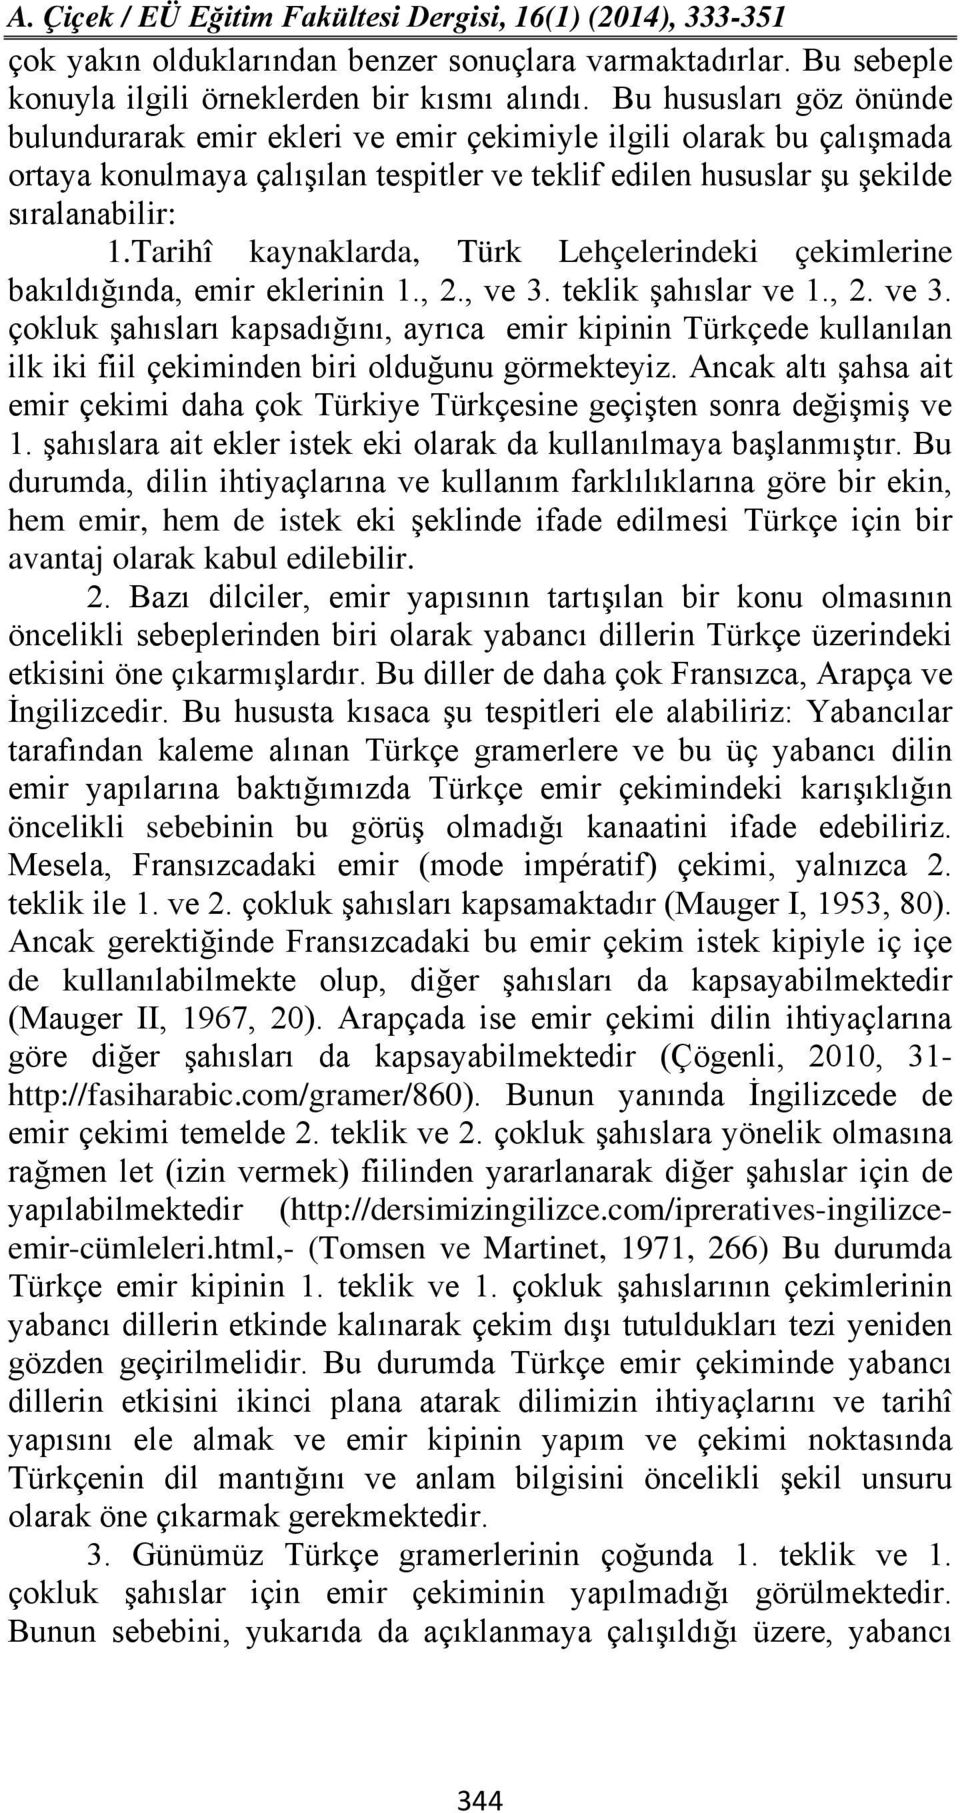 Tarihî kaynaklarda, Türk Lehçelerindeki çekimlerine bakıldığında, emir eklerinin 1., 2., ve 3.